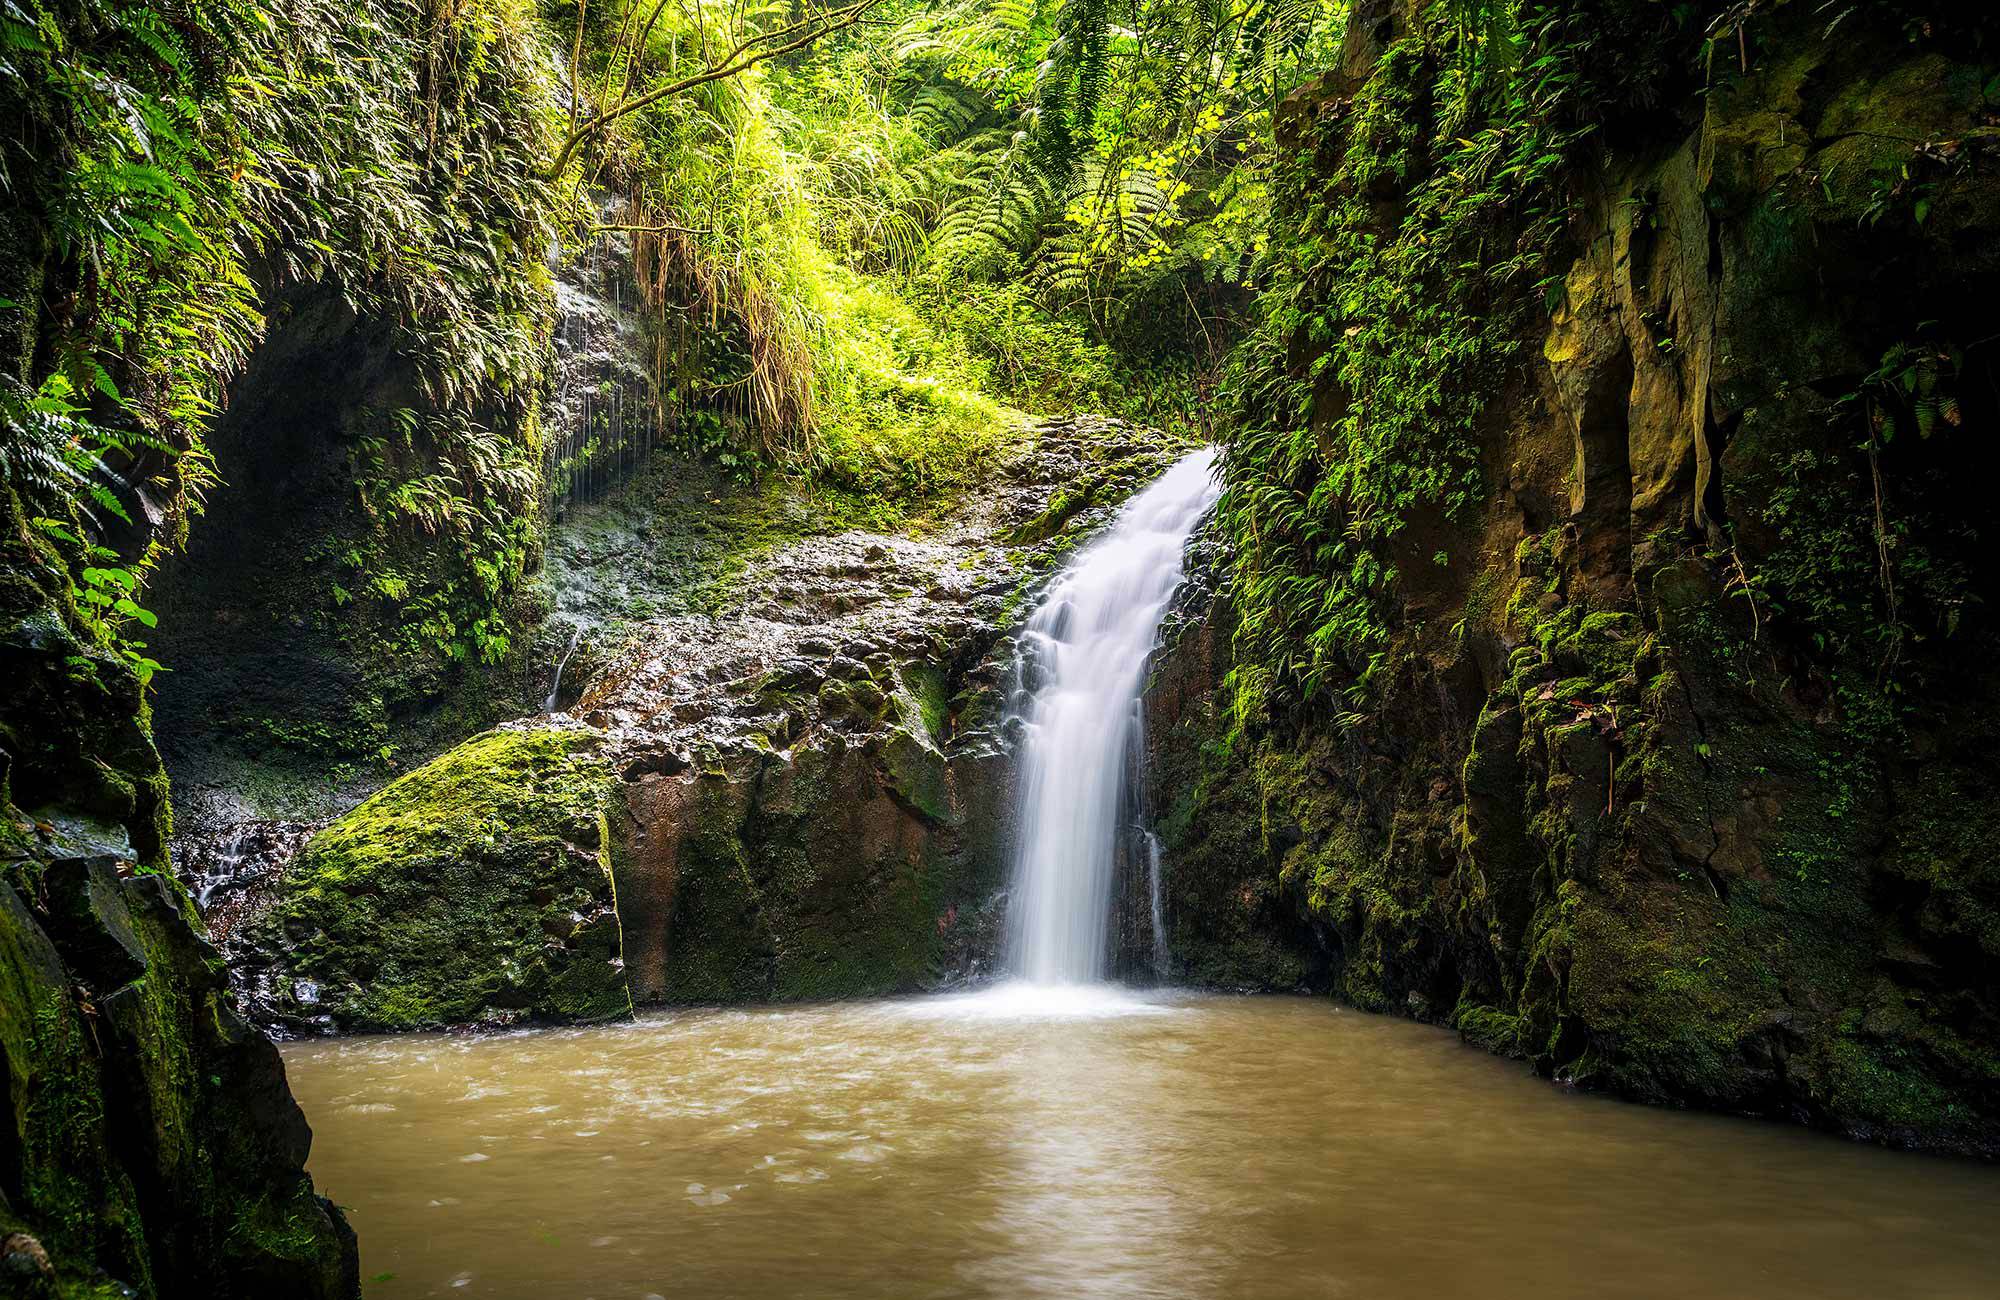 maunawili falls kan besökas under en resa till hawaii